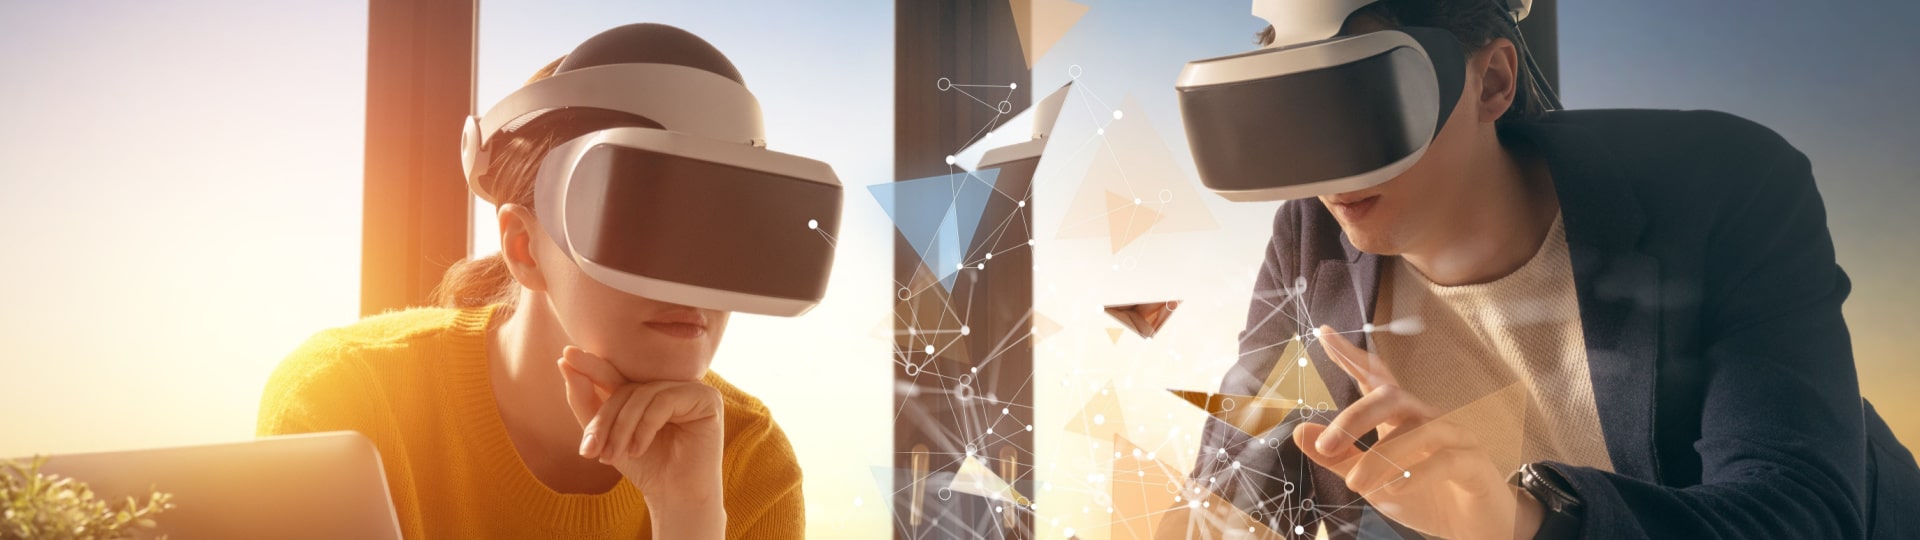 Meta spouští předplatné pro virtuální realitu